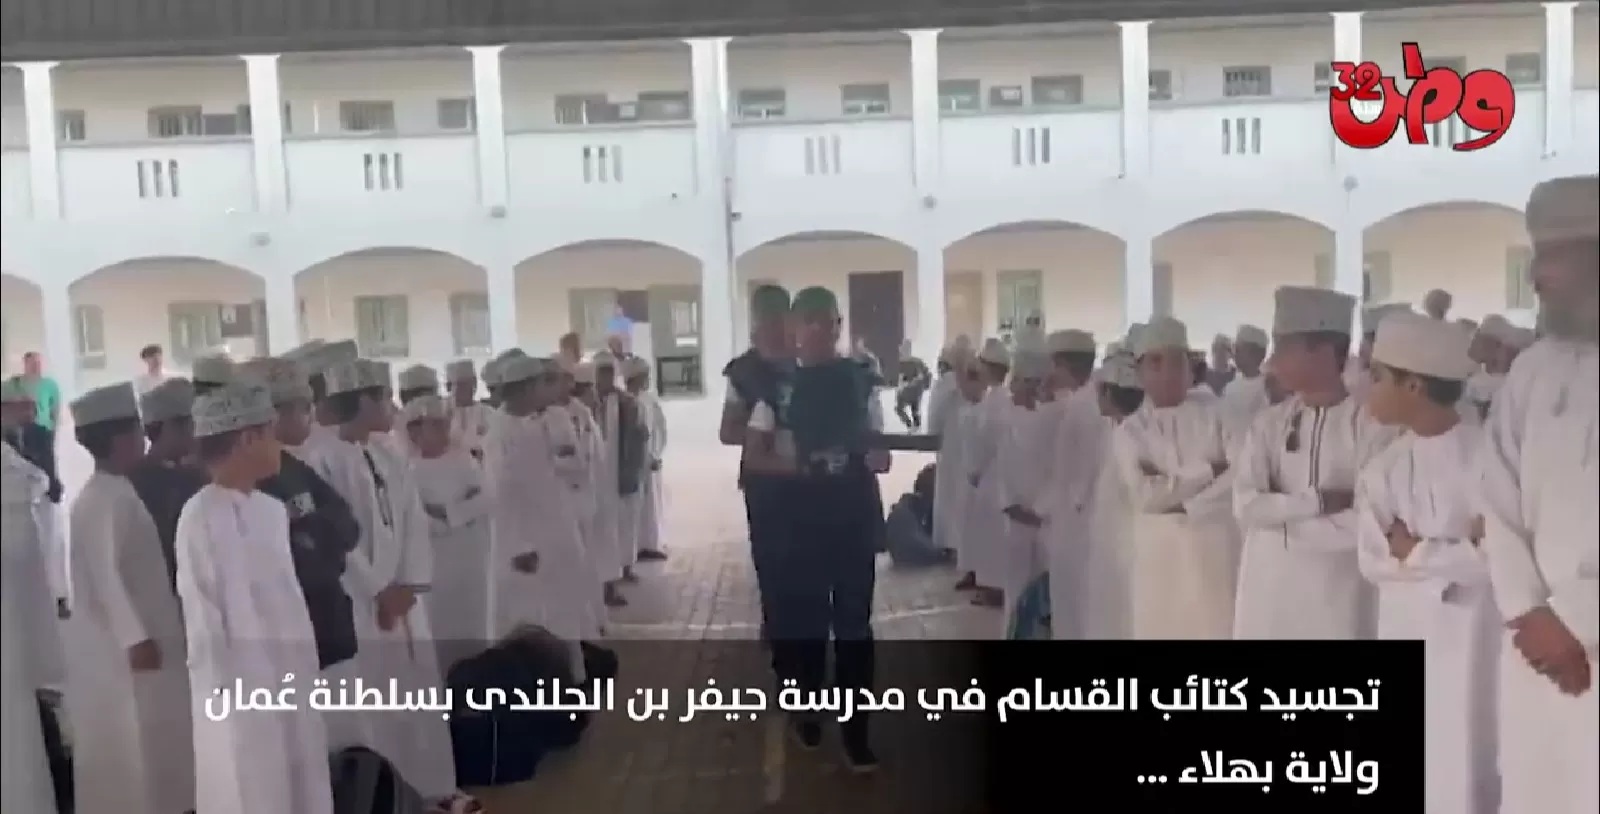 طلاب عمانيون على تجسيد استعراض عسكري لكتائب القسام